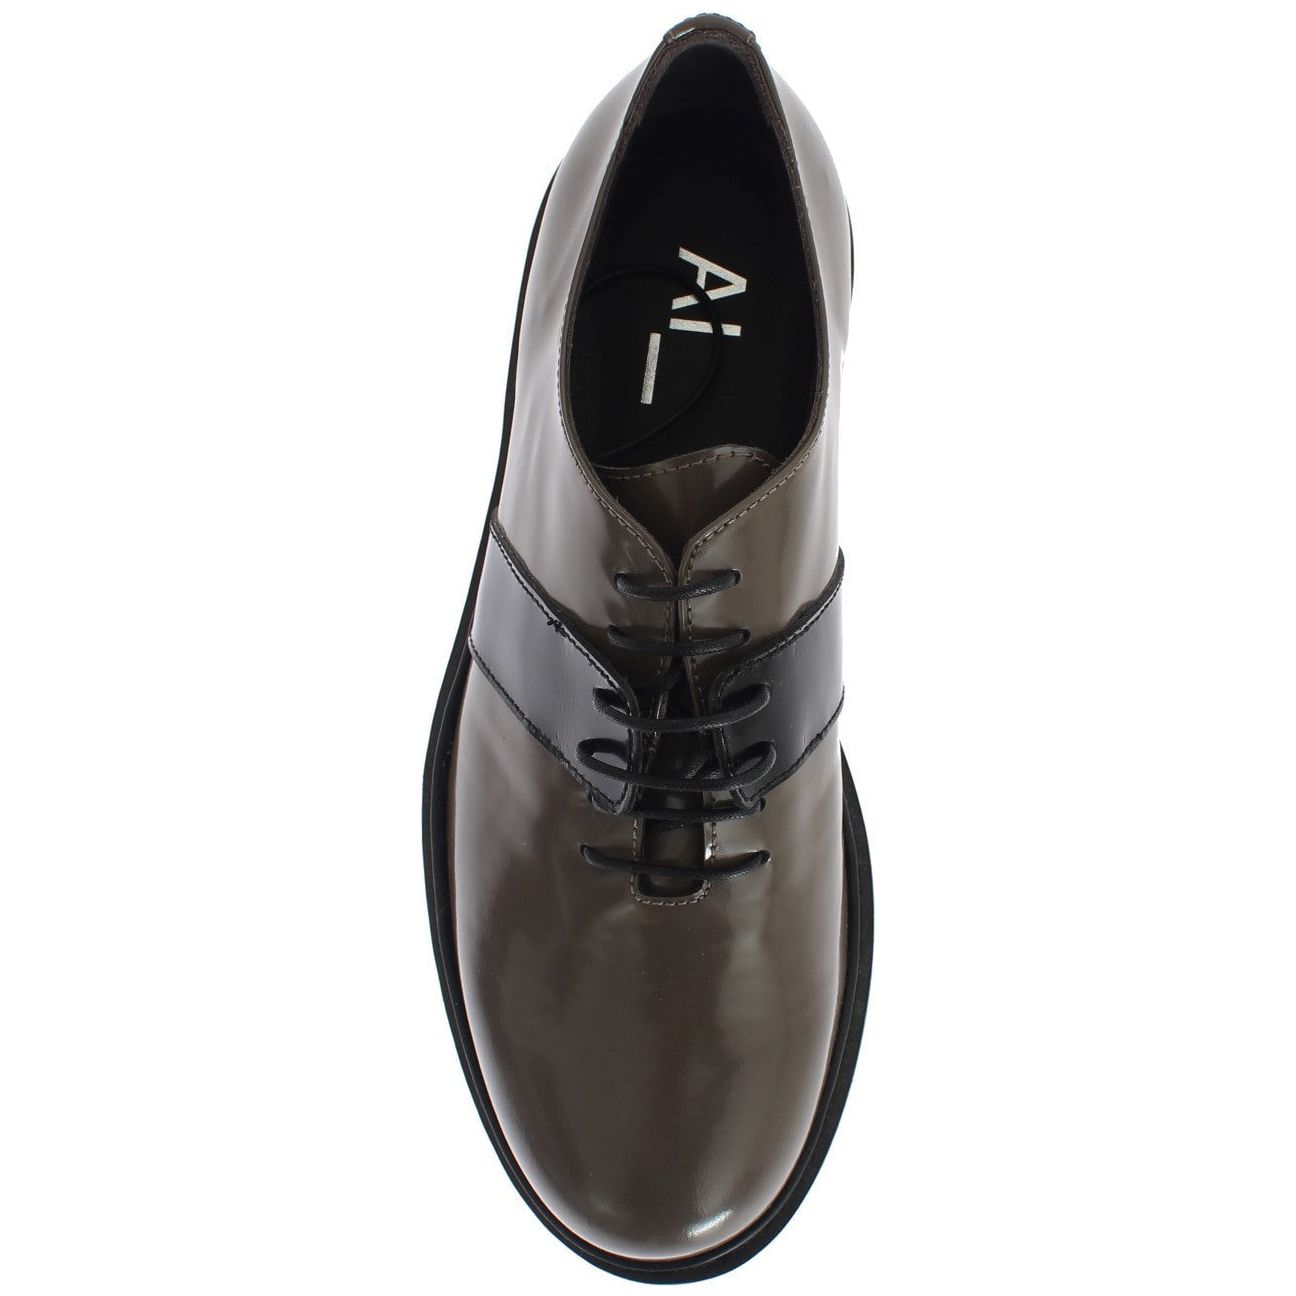 AI_ Elegant Gray Brown Leather Lace-up Shoes gray-brown-leather-laceups-shoes 267999-gray-brown-leather-laceups-shoes-6_bd9c5ec6-86f2-422d-ace1-6656f1707e9d.jpg